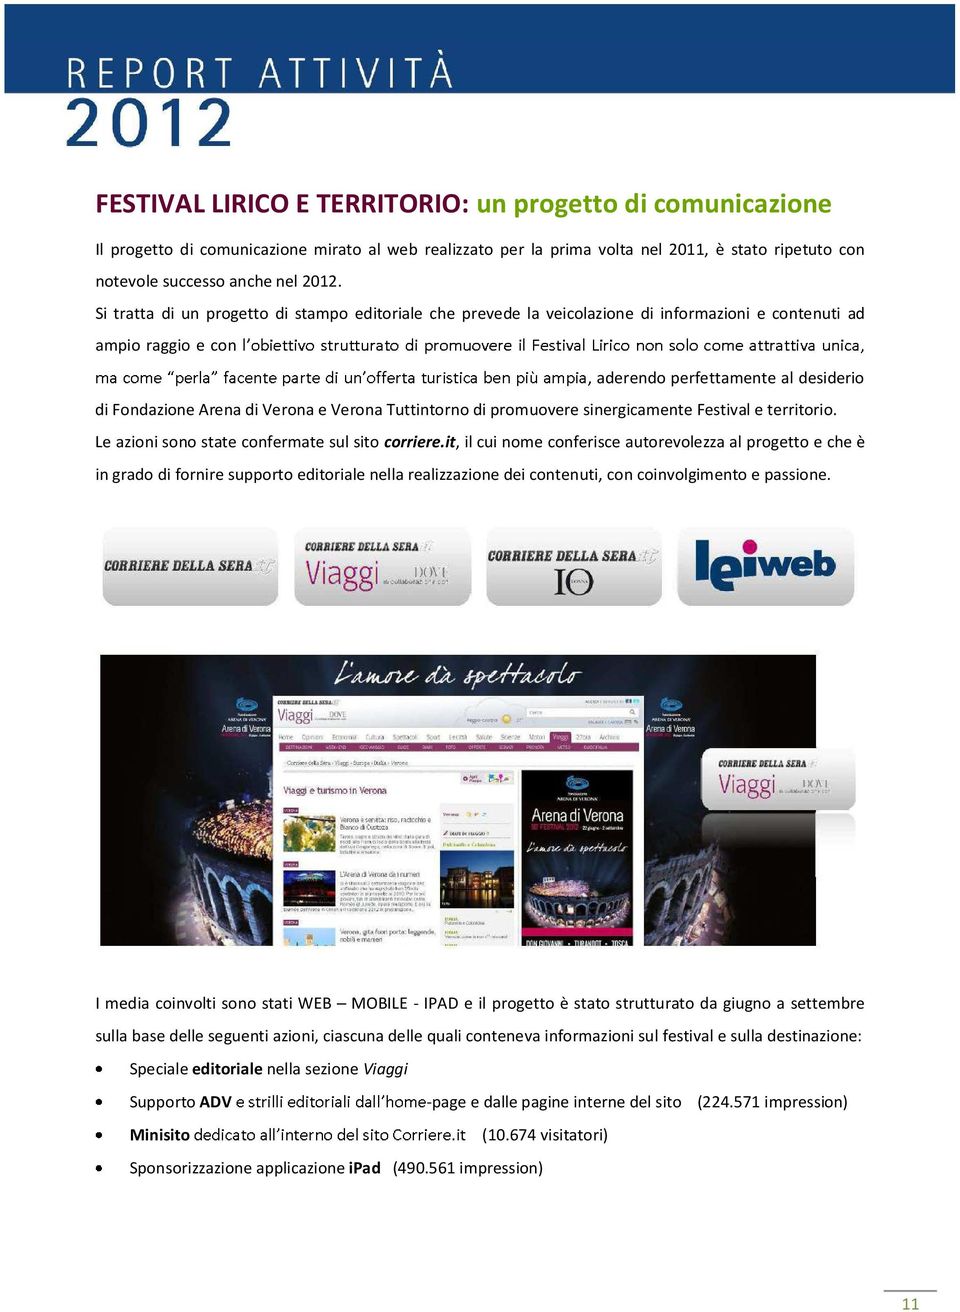 Tuttintorno di promuovere sinergicamente Festival e territorio. Le azioni sono state confermate sul sito corriere.